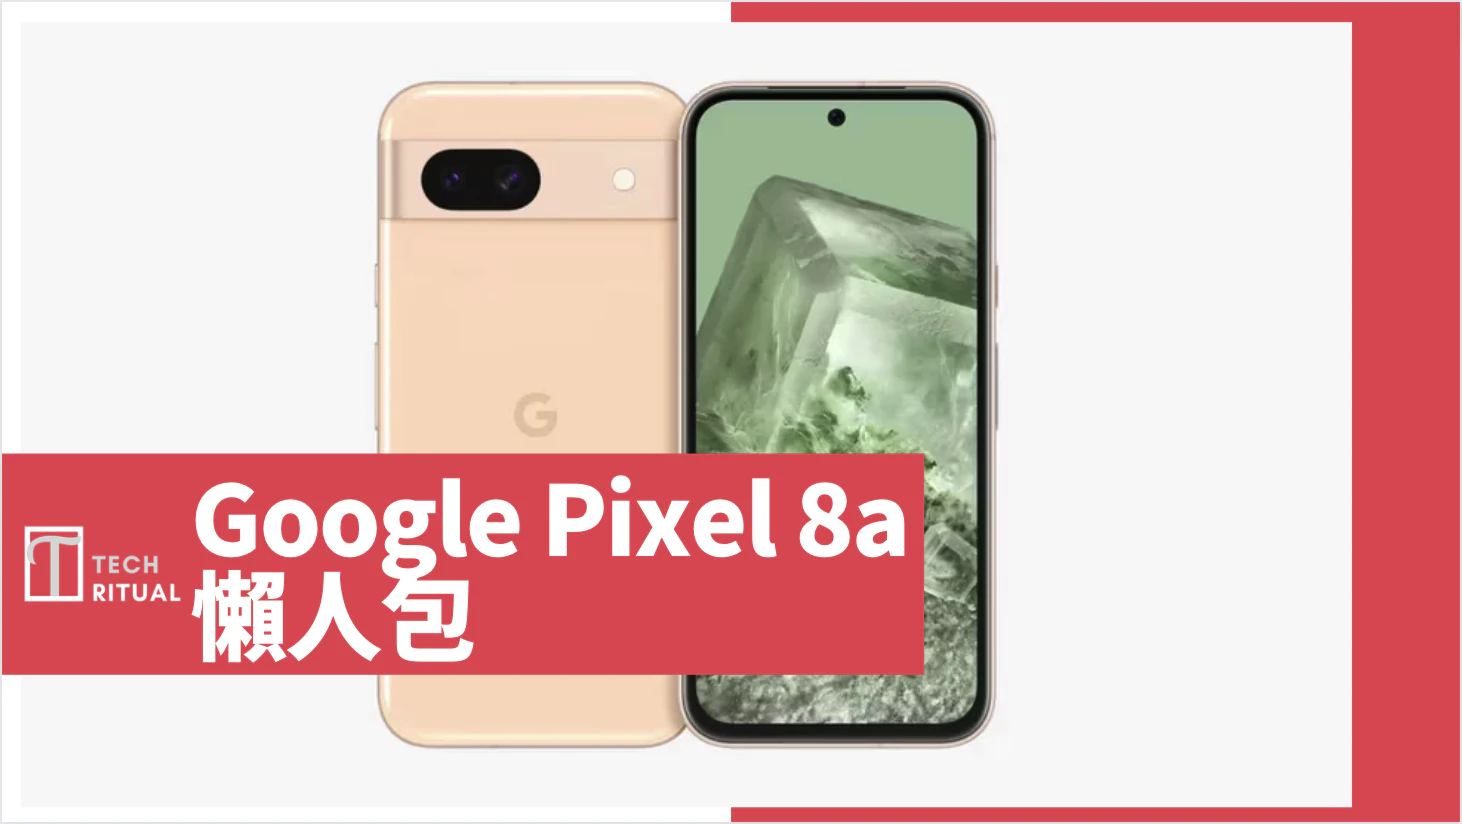 【說明】Google Pixel 8a 懶人包：規格、雙鏡頭相機、AI 功能、售價、推出時間